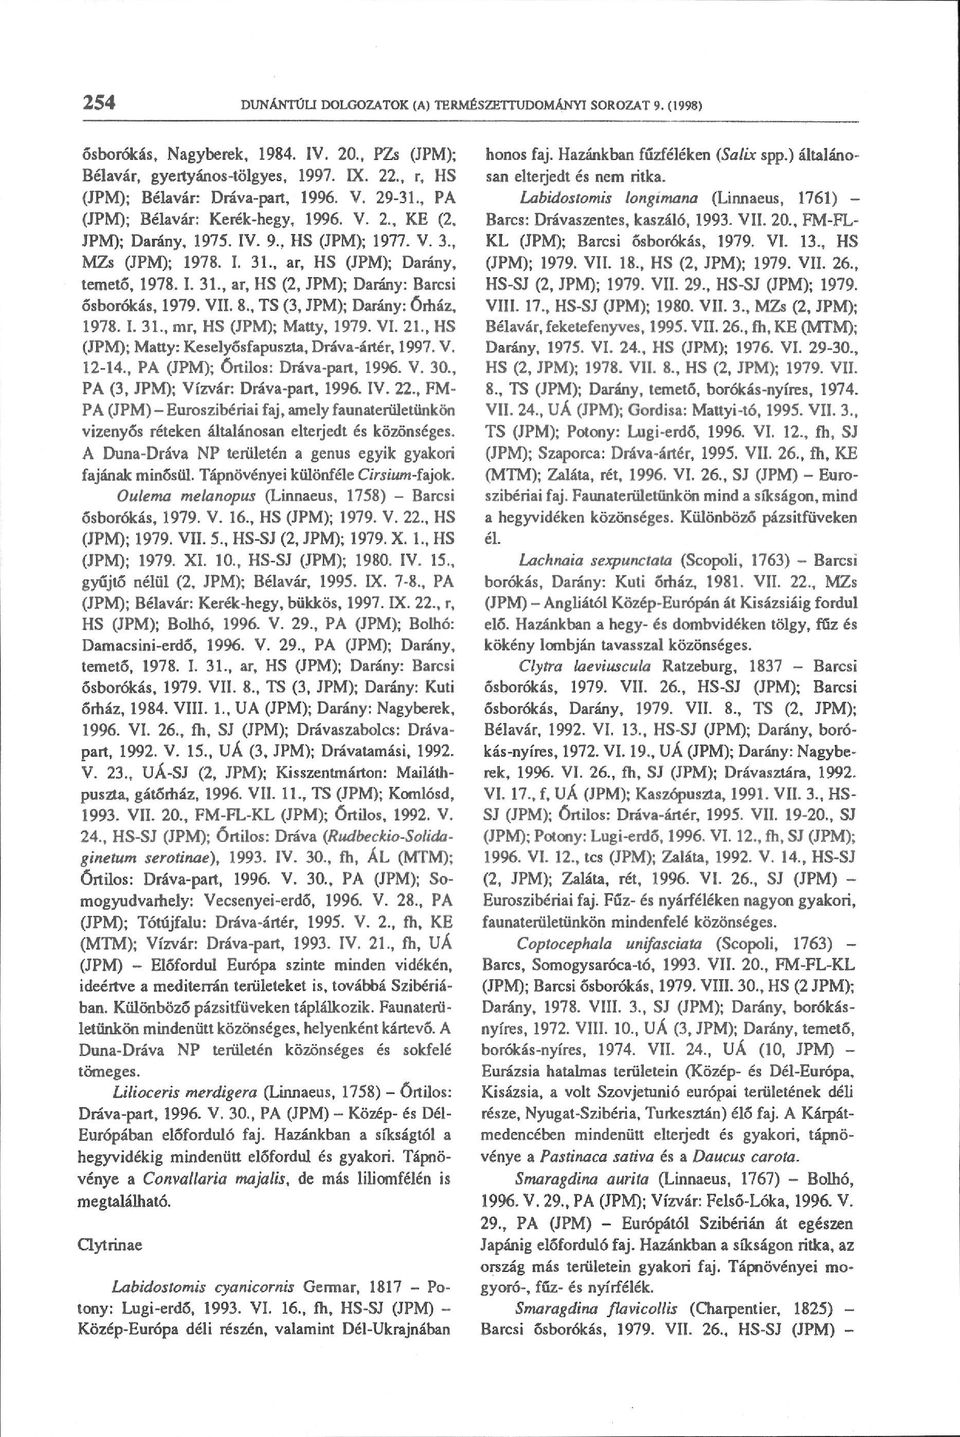 VII. 8., TS (3, JPM); Darány: Órház, 1978. I. 31., mr, HS (JPM); Matty, 1979. VI. 21., HS (JPM); Matty: Keselyősfapuszta, Dráva-ártér, 1997. V. 12-14., PA (JPM); órtilos: Dráva-part, 1996. V. 30.